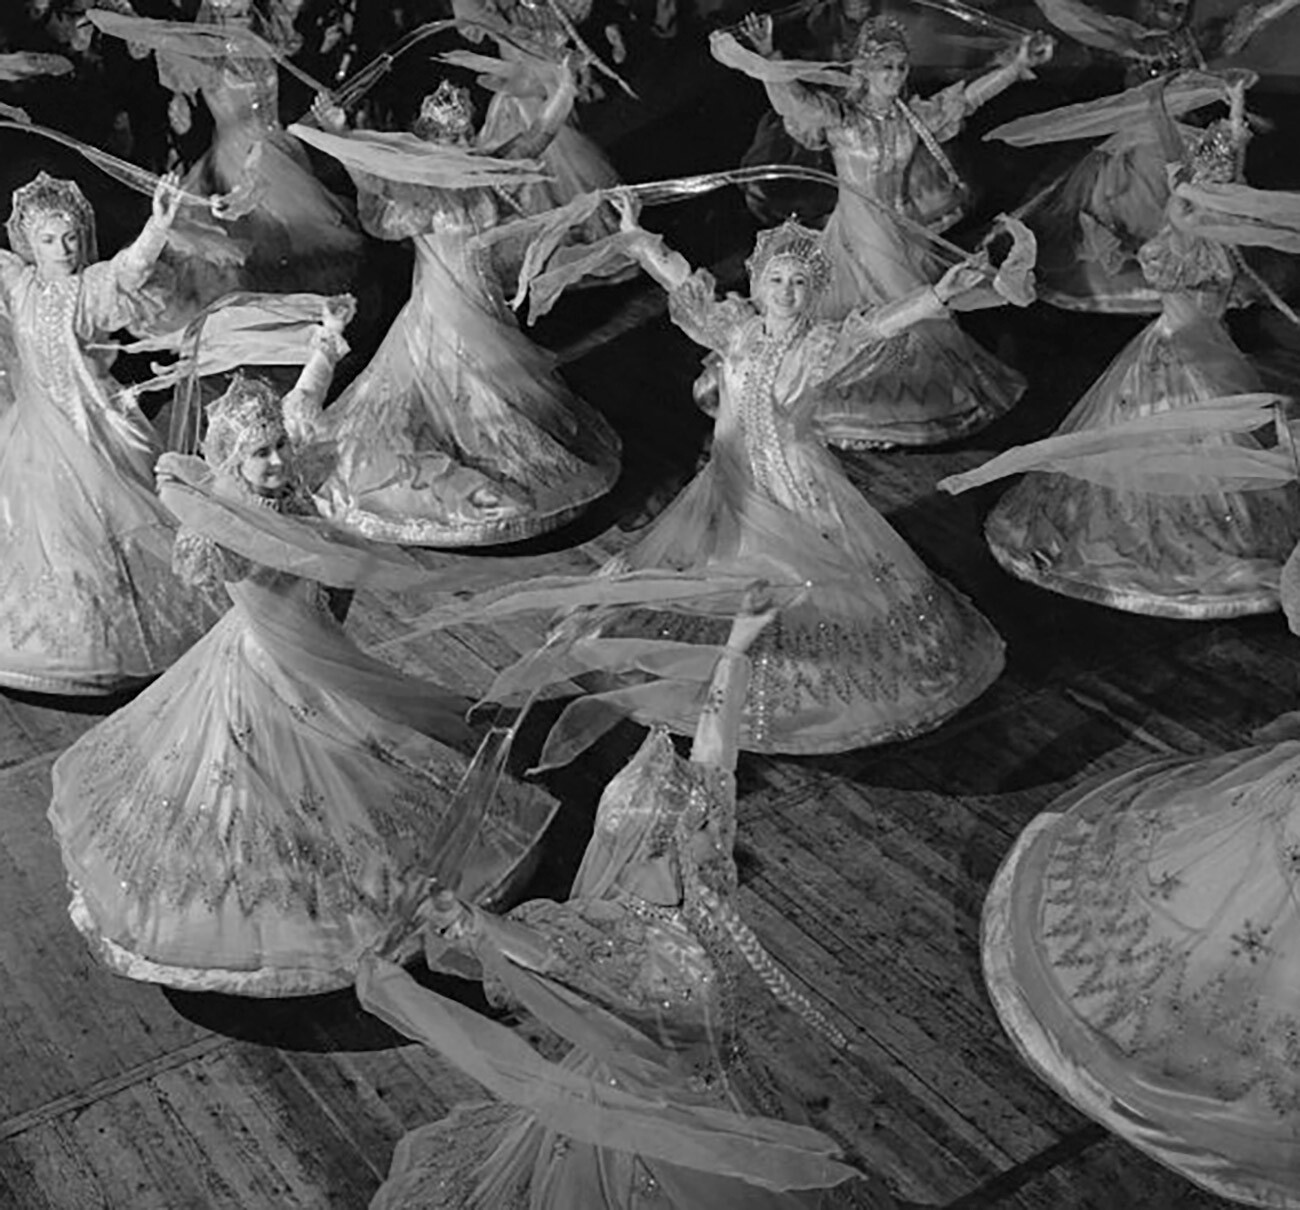 舞踊「メテリツァ（吹雪）」（1950年代）
